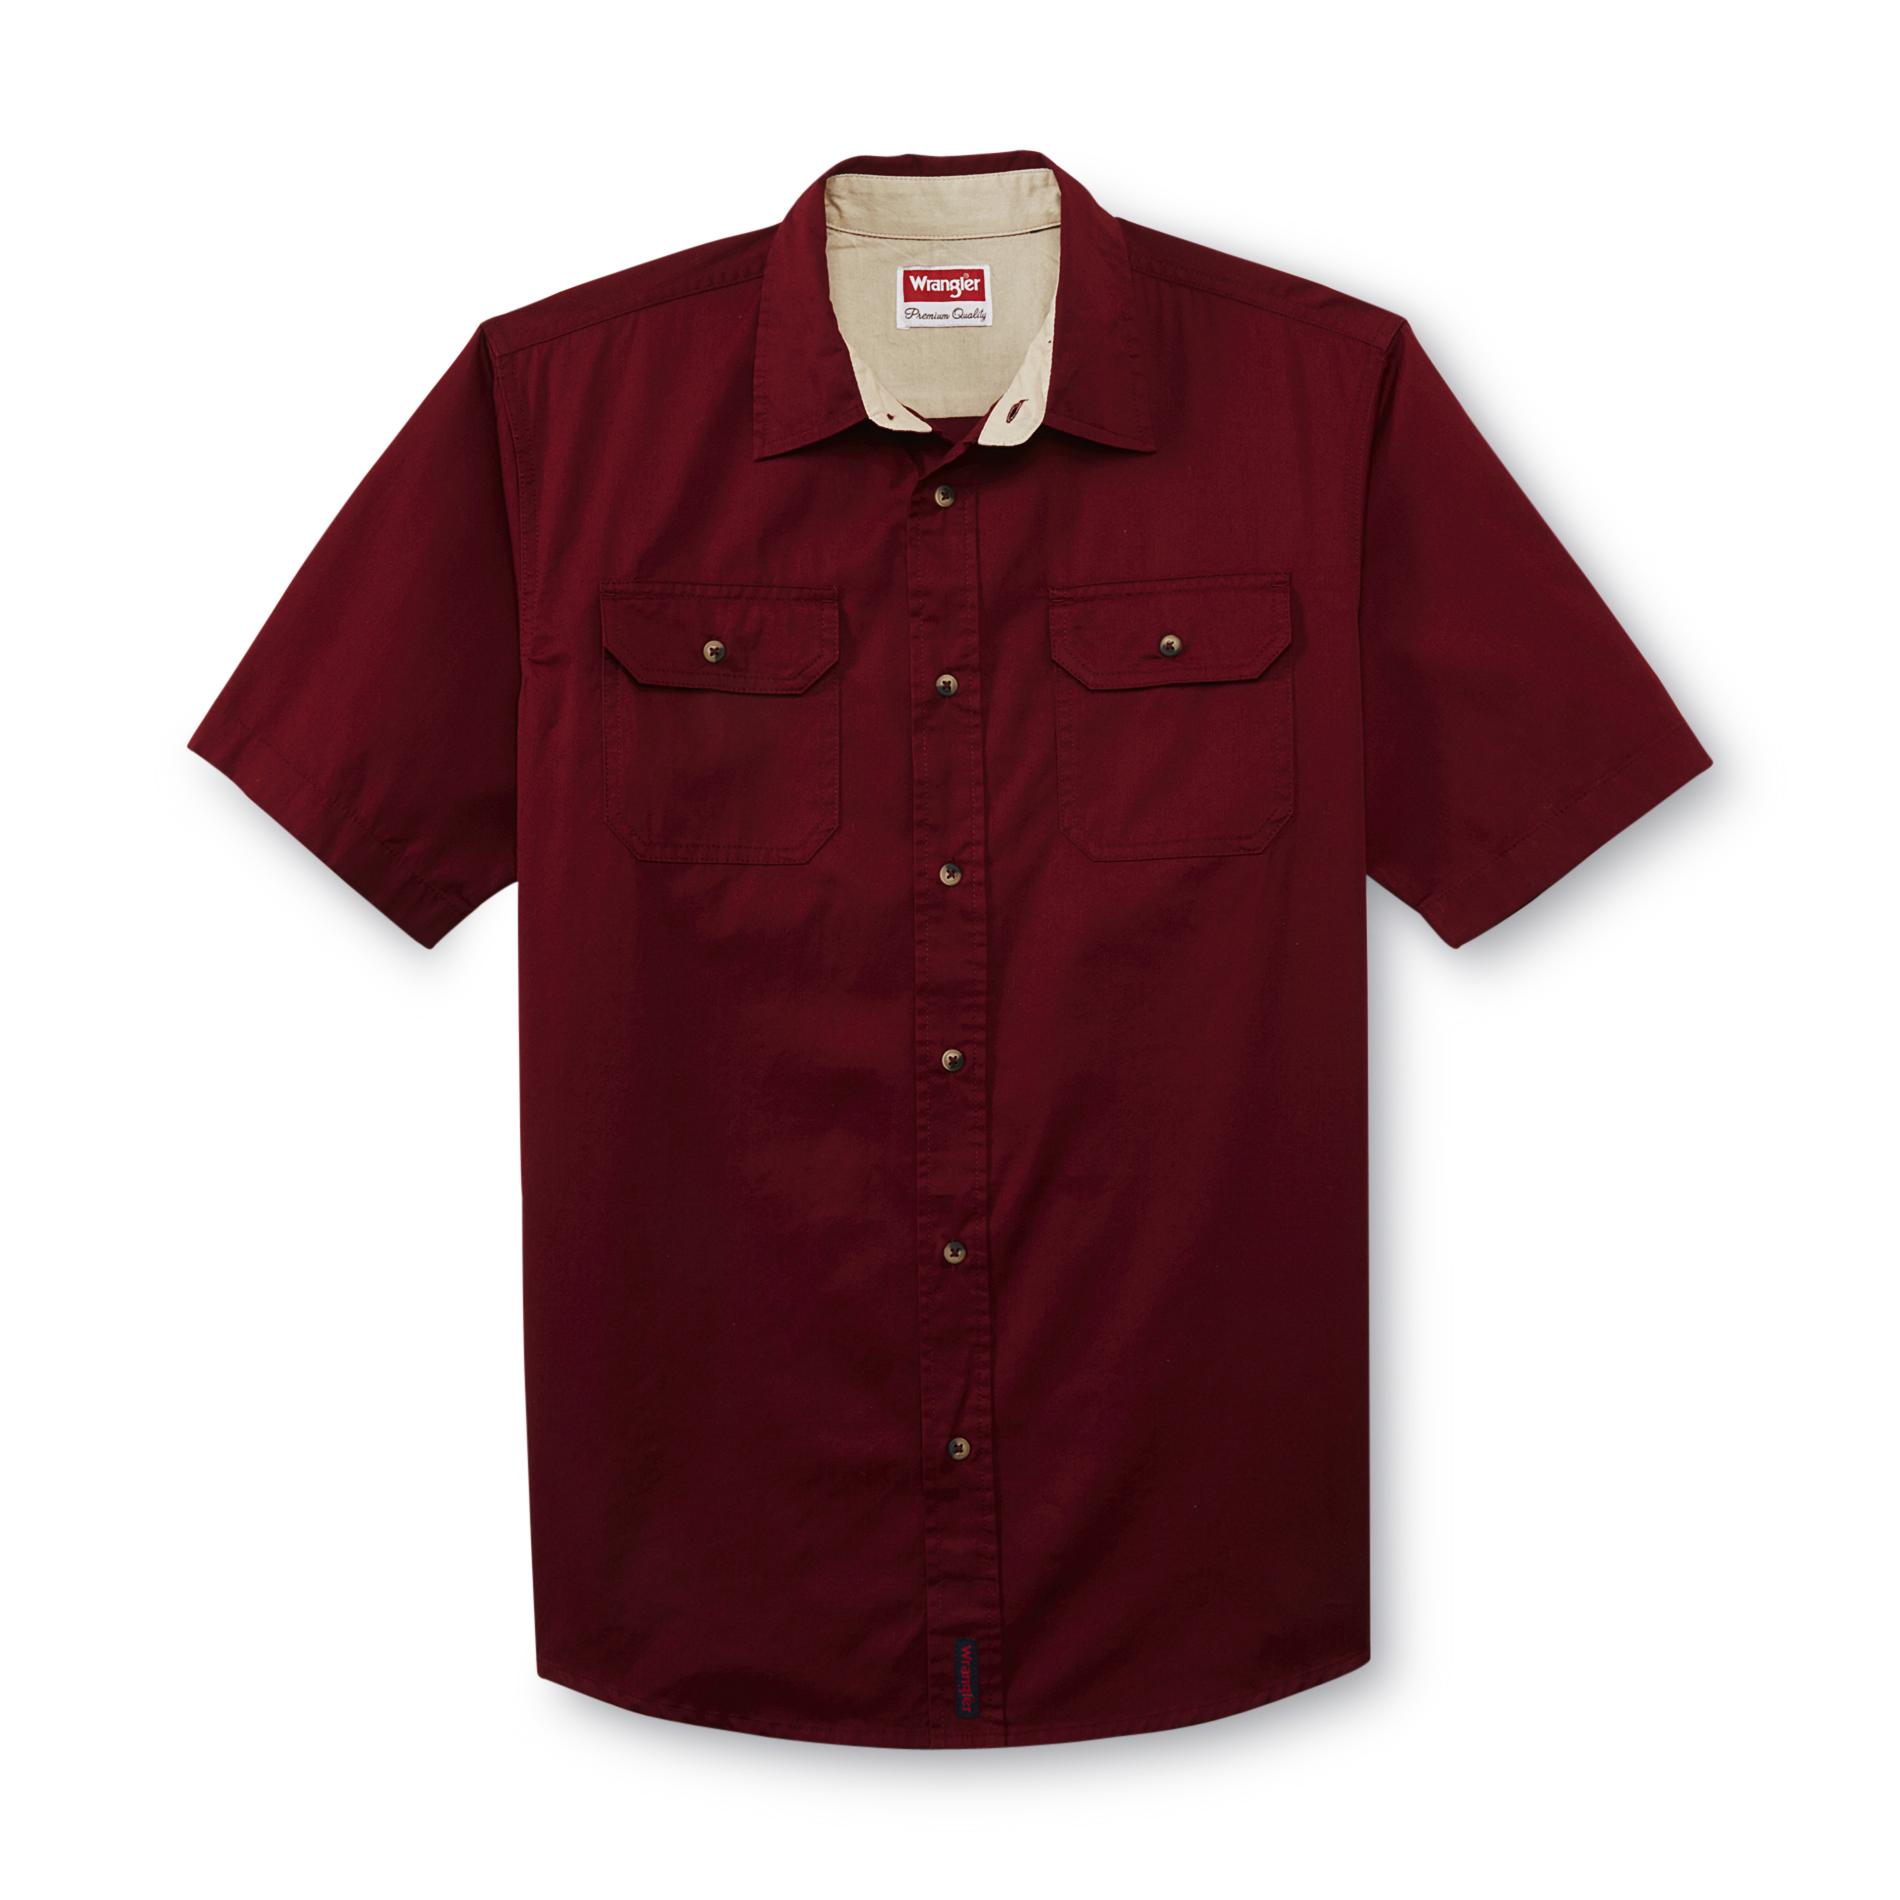 Wrangler Men's Short-Sleeve Shirt